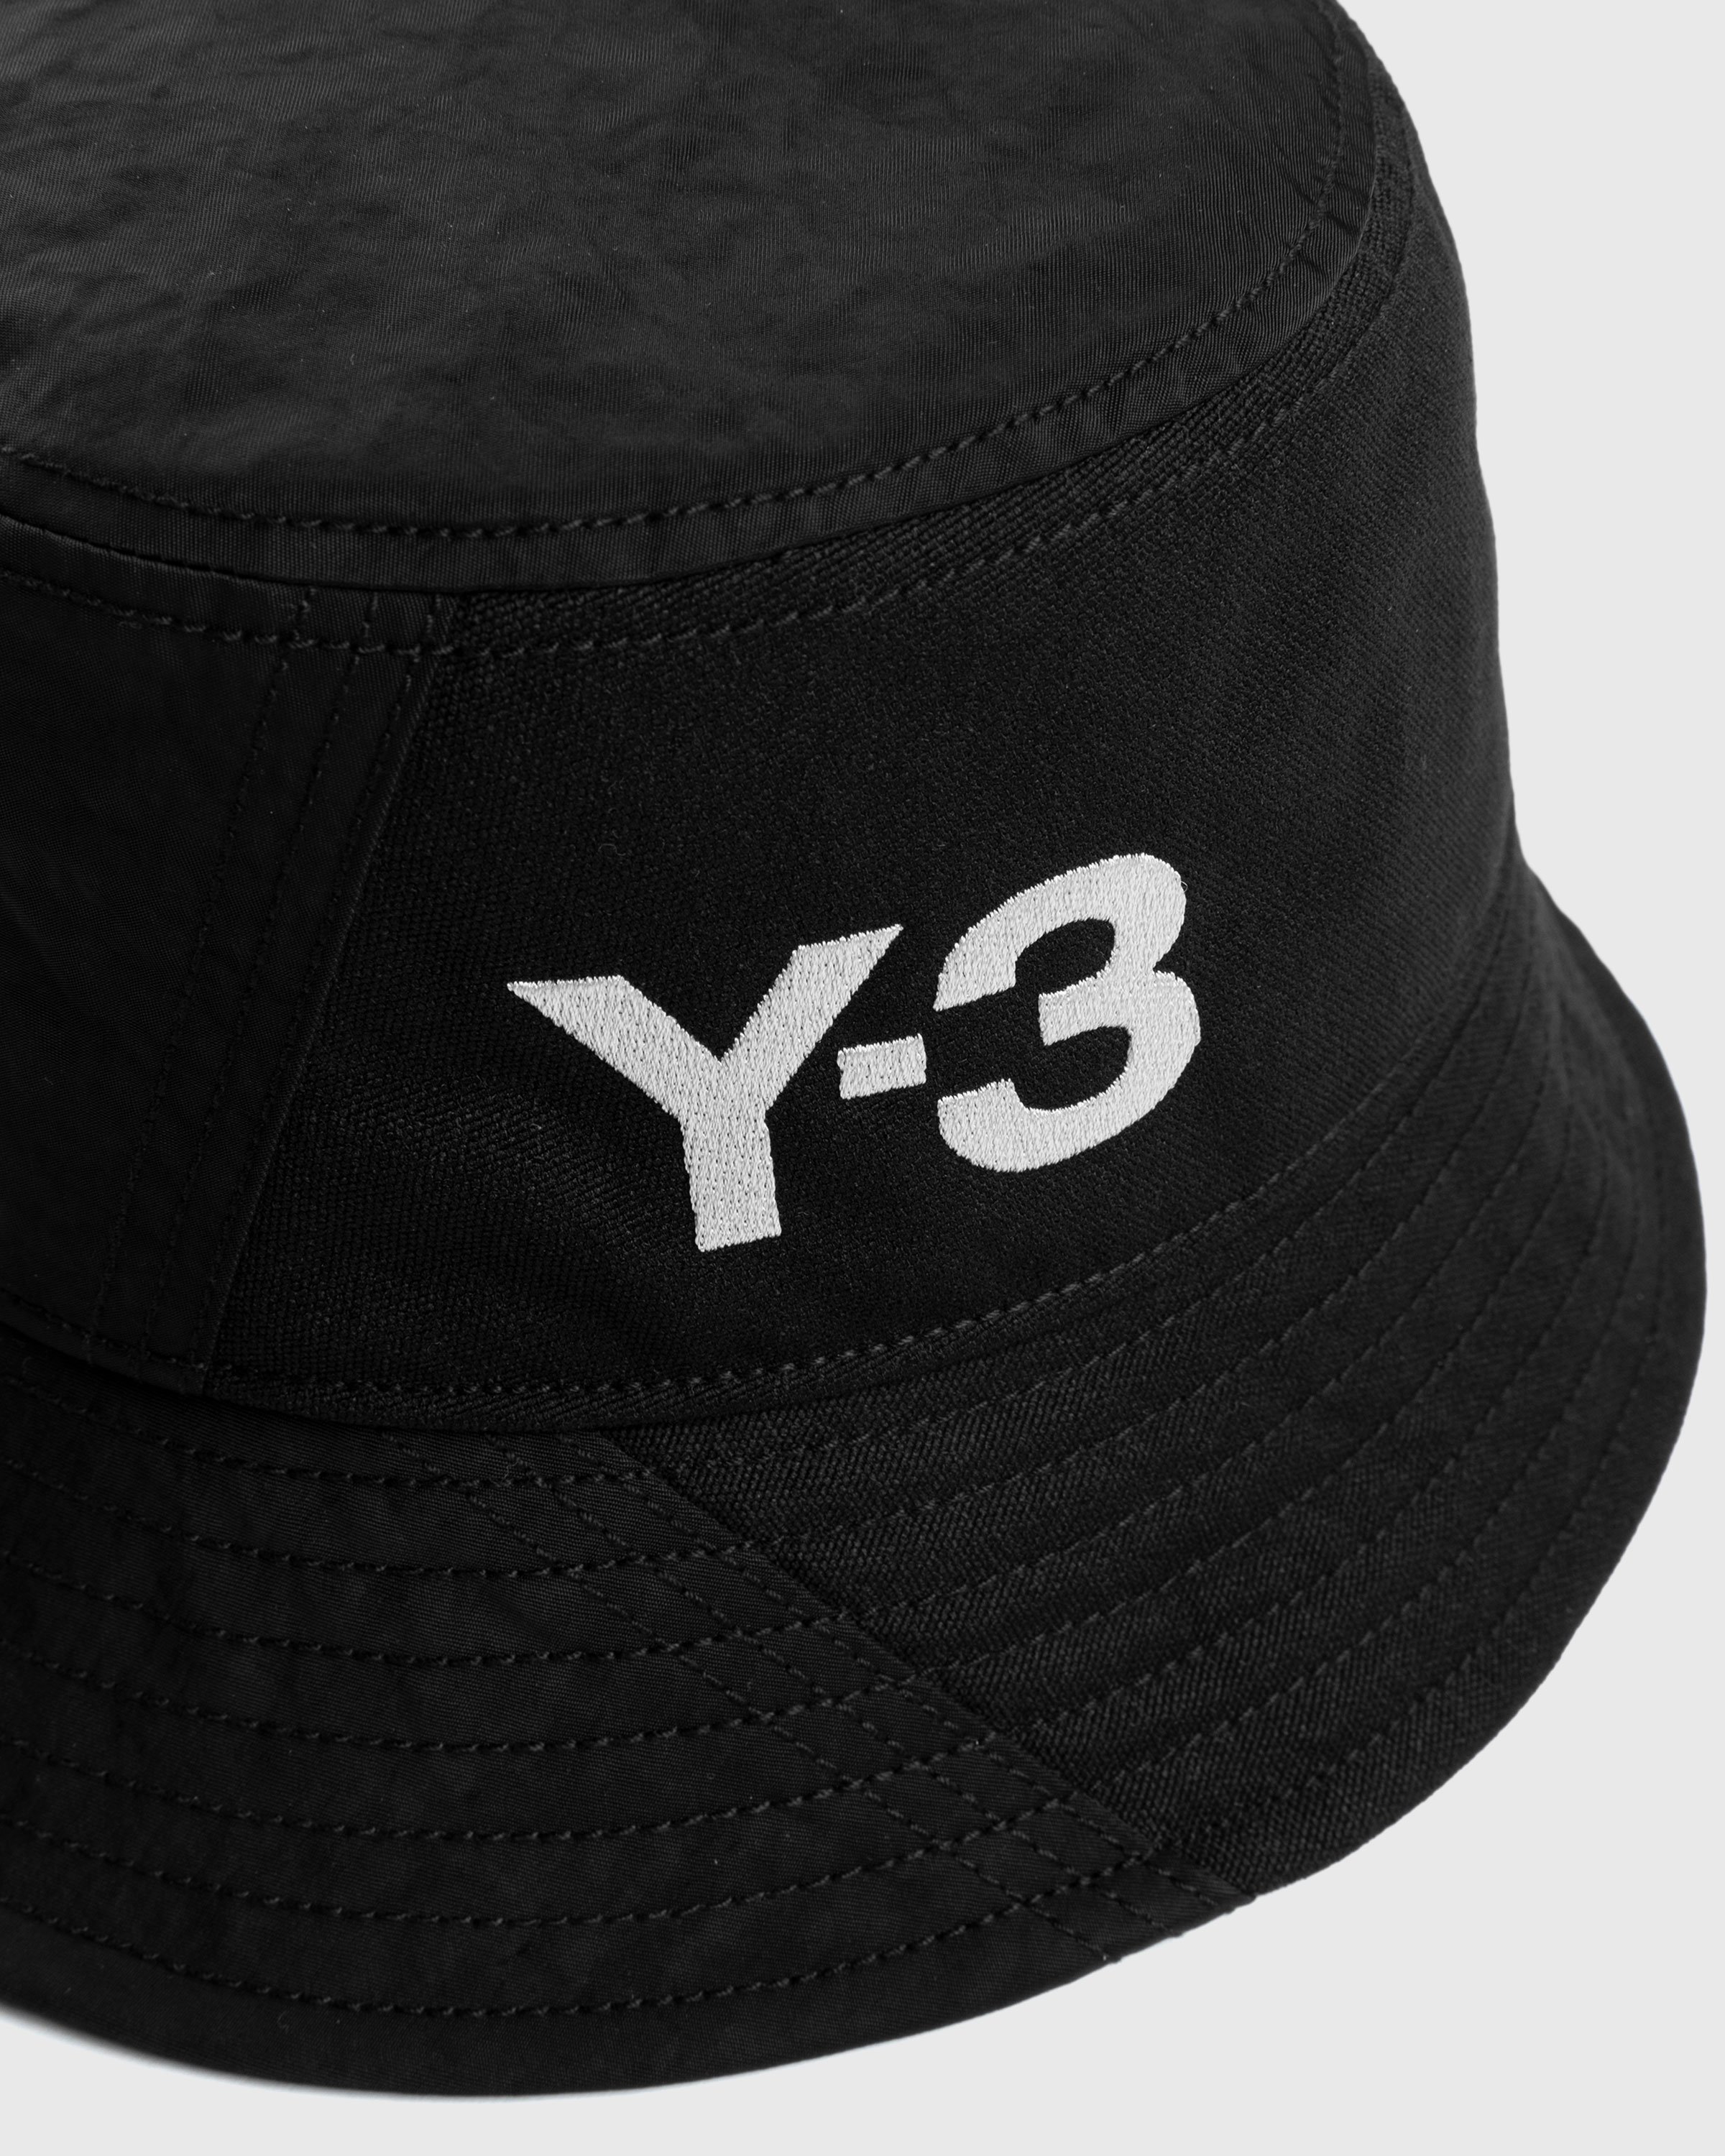 Y-3 - Bucket Hat Black - Accessories - Black - Image 3